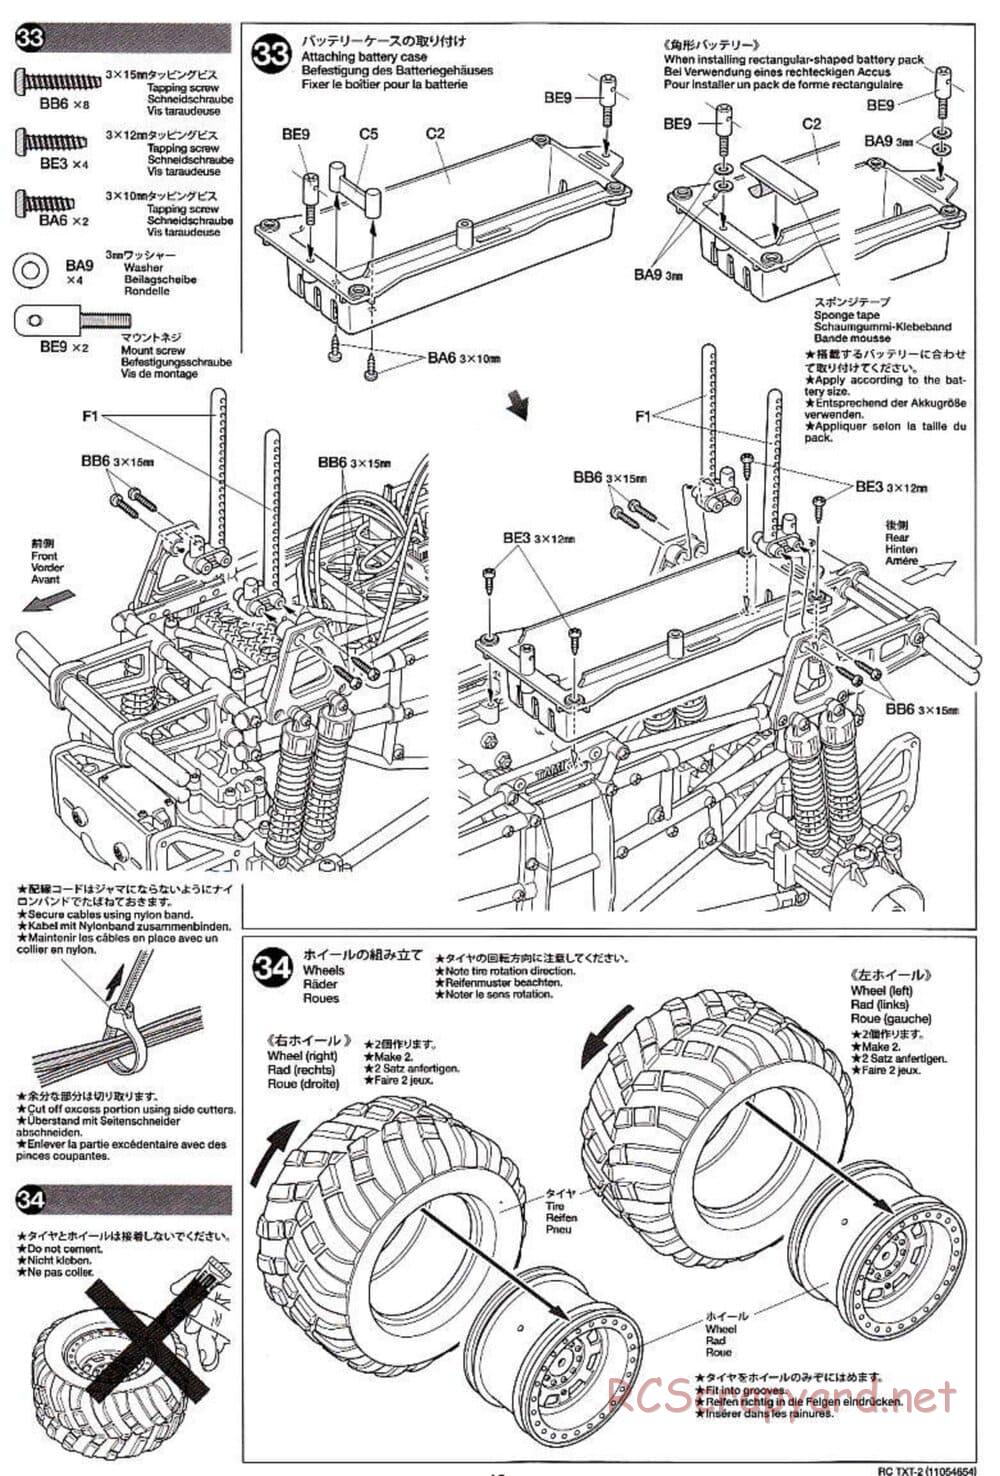 Tamiya - TXT-2 Chassis - Manual - Page 19